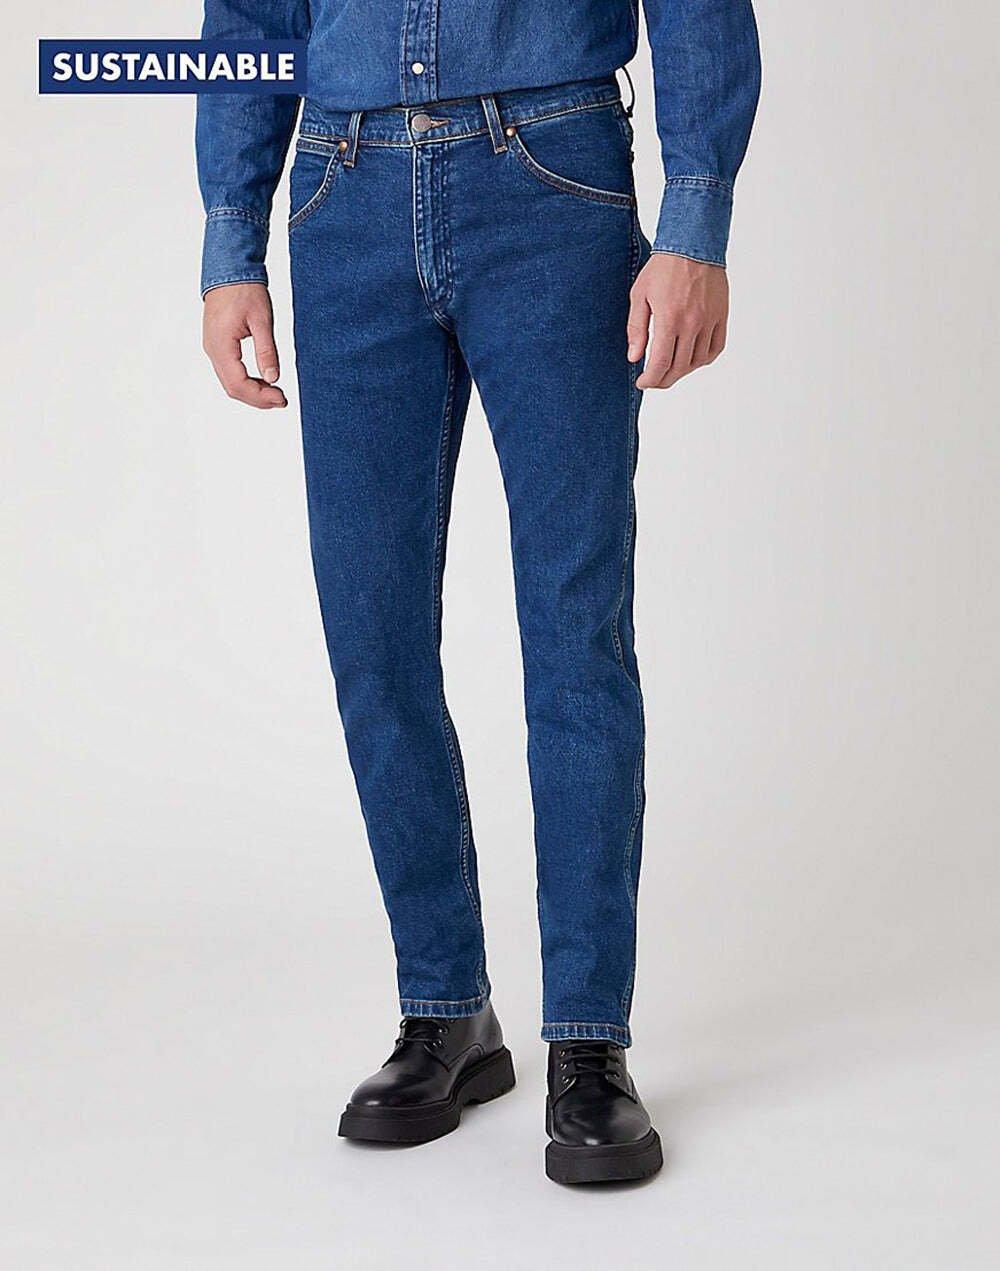 Jeans Slim Fit 11mwz Herren Blau Denim L34/W36 von Wrangler